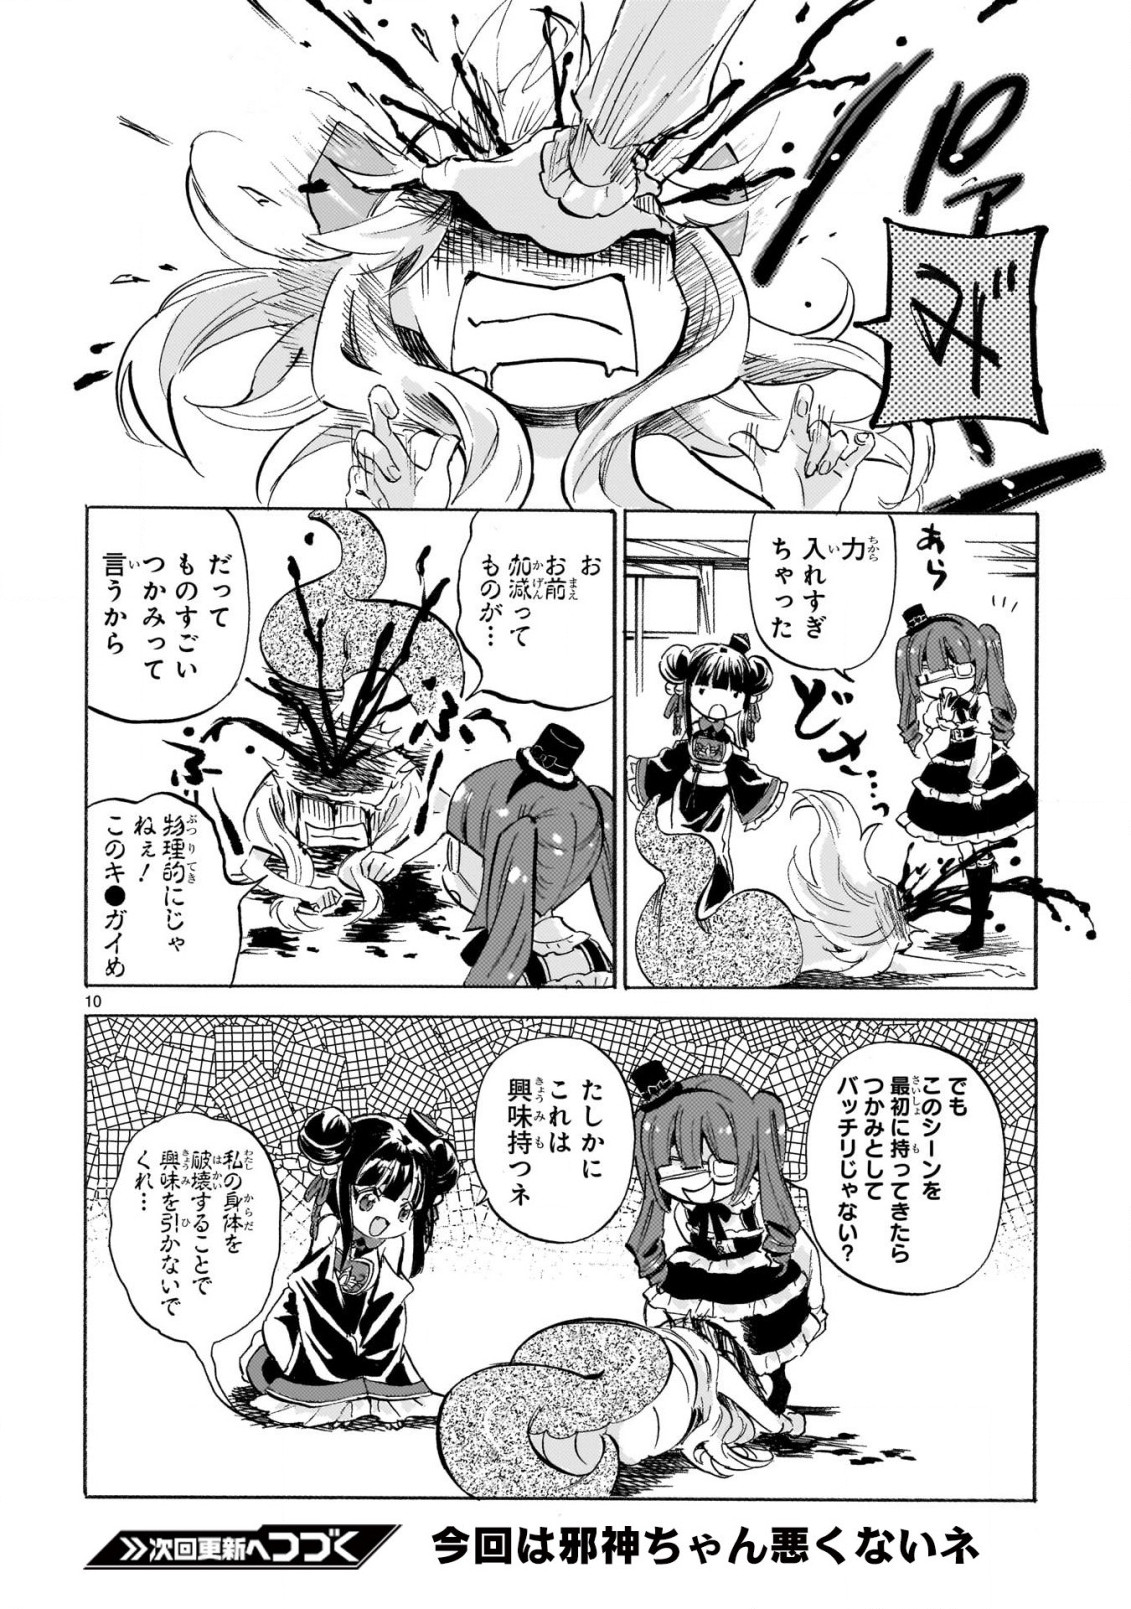 Jashin-chan Dropkick - Chapter 231 - Page 10